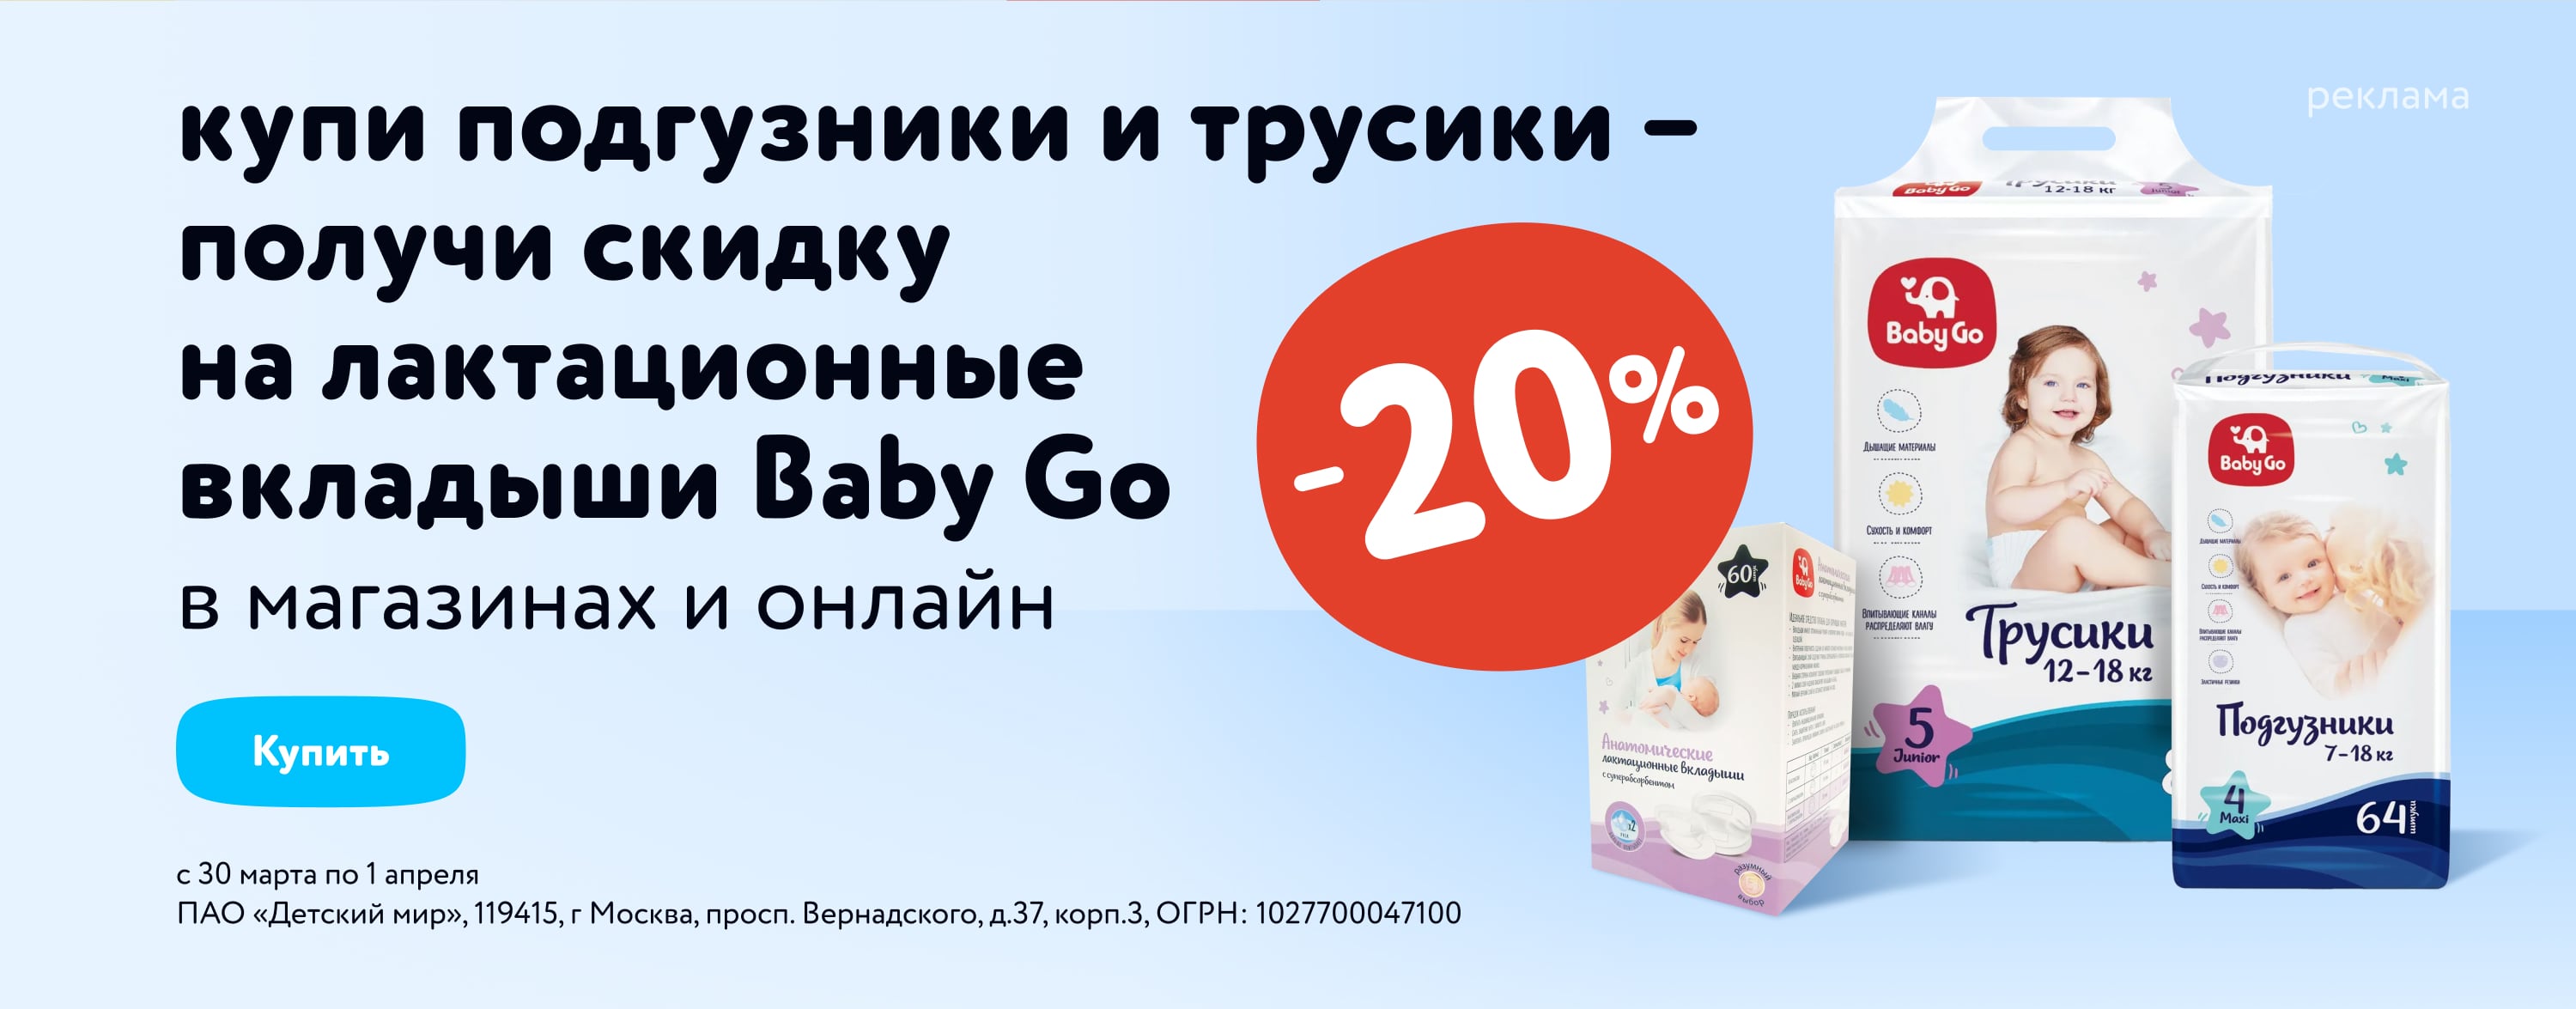 При покупке подгузников и трусиков Baby Go - скидка 20% на вкладыши Baby Go